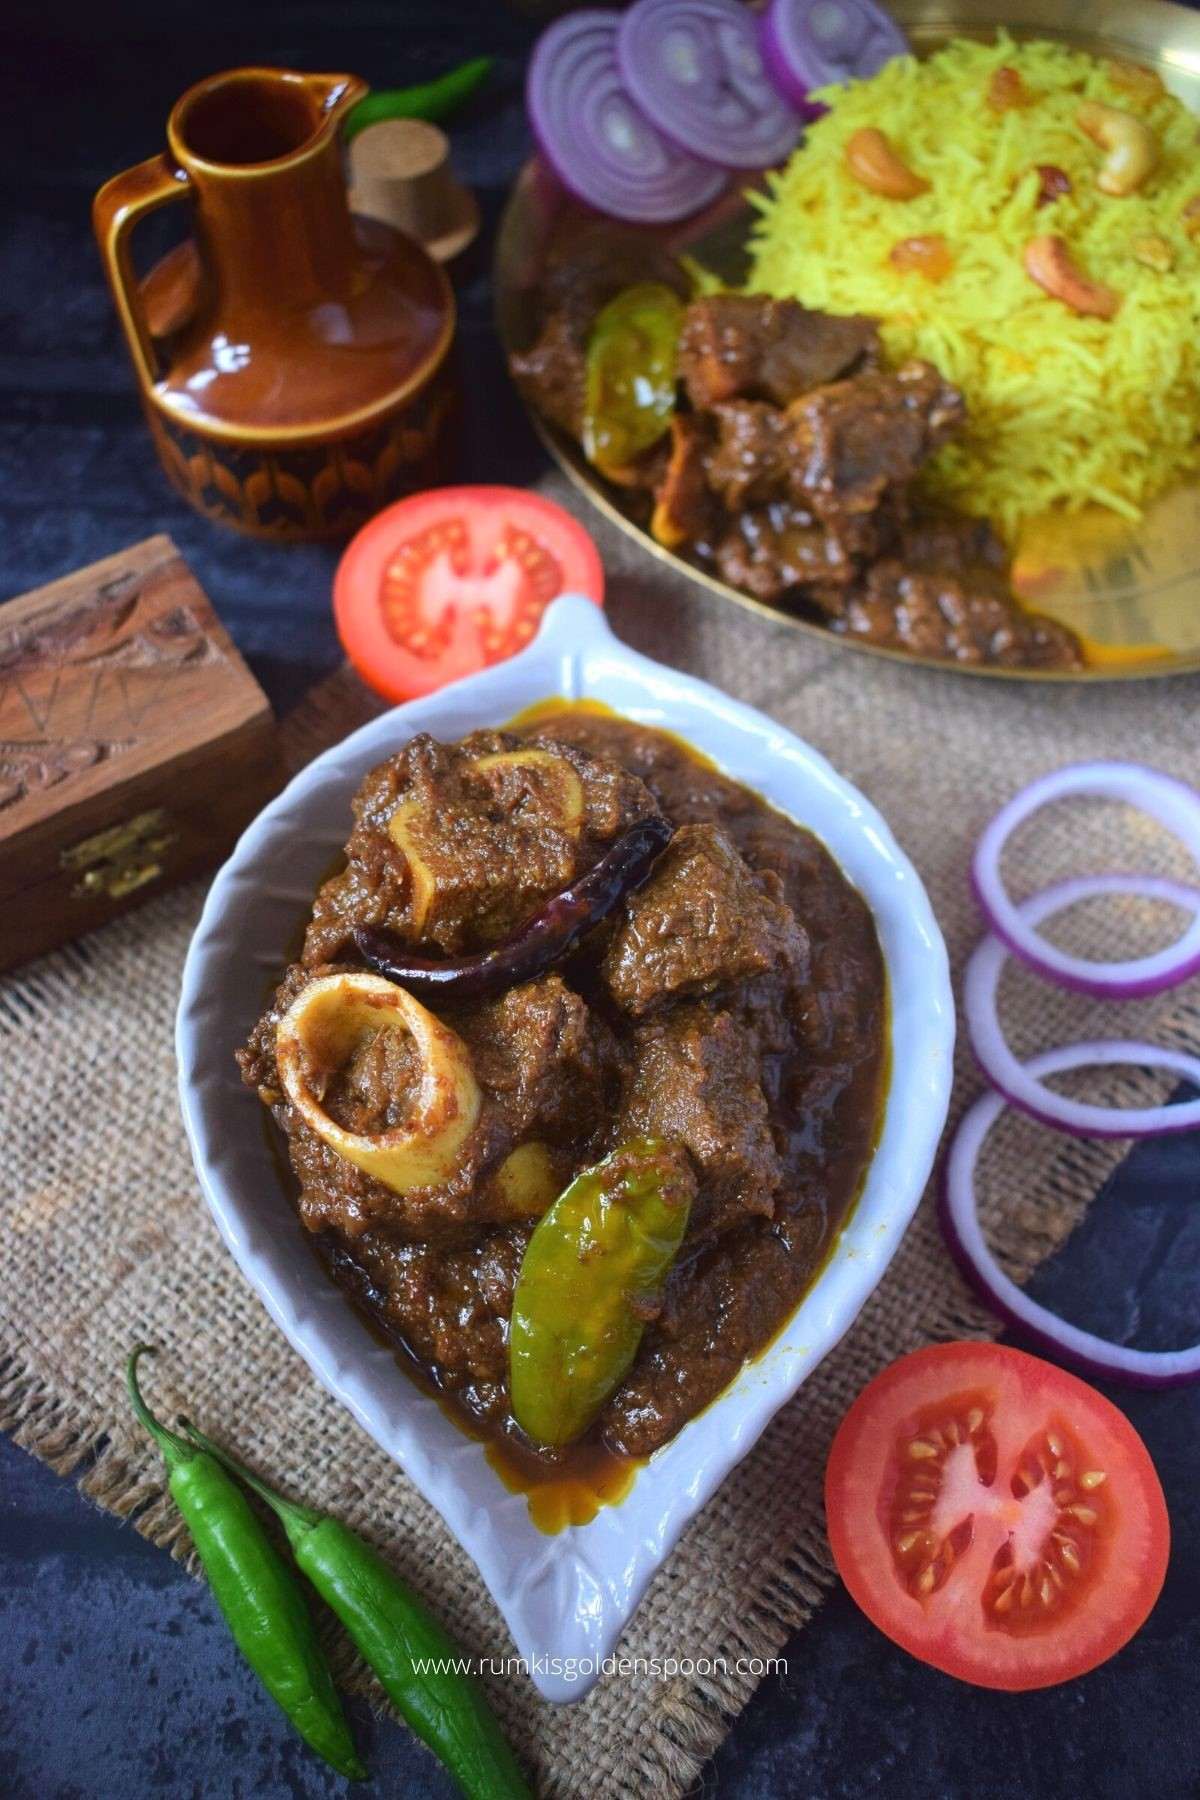 mutton kosha, kosha mangsho, mutton kosha recipe, kosha mangsho recipe, recipe for kosha mangsho, recipe for mutton kosha, bengali mutton kosha, bengali mutton curry recipe, mutton kosha recipe in bengali language, golbari kosha mangsho history, kosha mangsho mutton, how to make mutton kosha, kosha mangsho recipe bengali style, mutton kosha mangsho, how to make kosha mangsho, authentic kosha mangsho recipe, mutton kosha bengali style, bengali mutton kosha recipe, mutton kosha in bengali, how to cook mutton kosha, mutton kosha recipe bengali, kosha mangsho recipe in bengali, kosha mangsho bengali style, what is kosha mangsho, how to make mutton liver, mutton kosha mangsho recipe, kosha pathar mangsho recipe, golbari kosha mangsho kolkata recipe, kosha mangsho golbari, kosha mangsho golbari recipe, how to prepare mutton kosha, mutton kasha, mutton kassa, kasha mangsho, Rumki's Golden Spoon